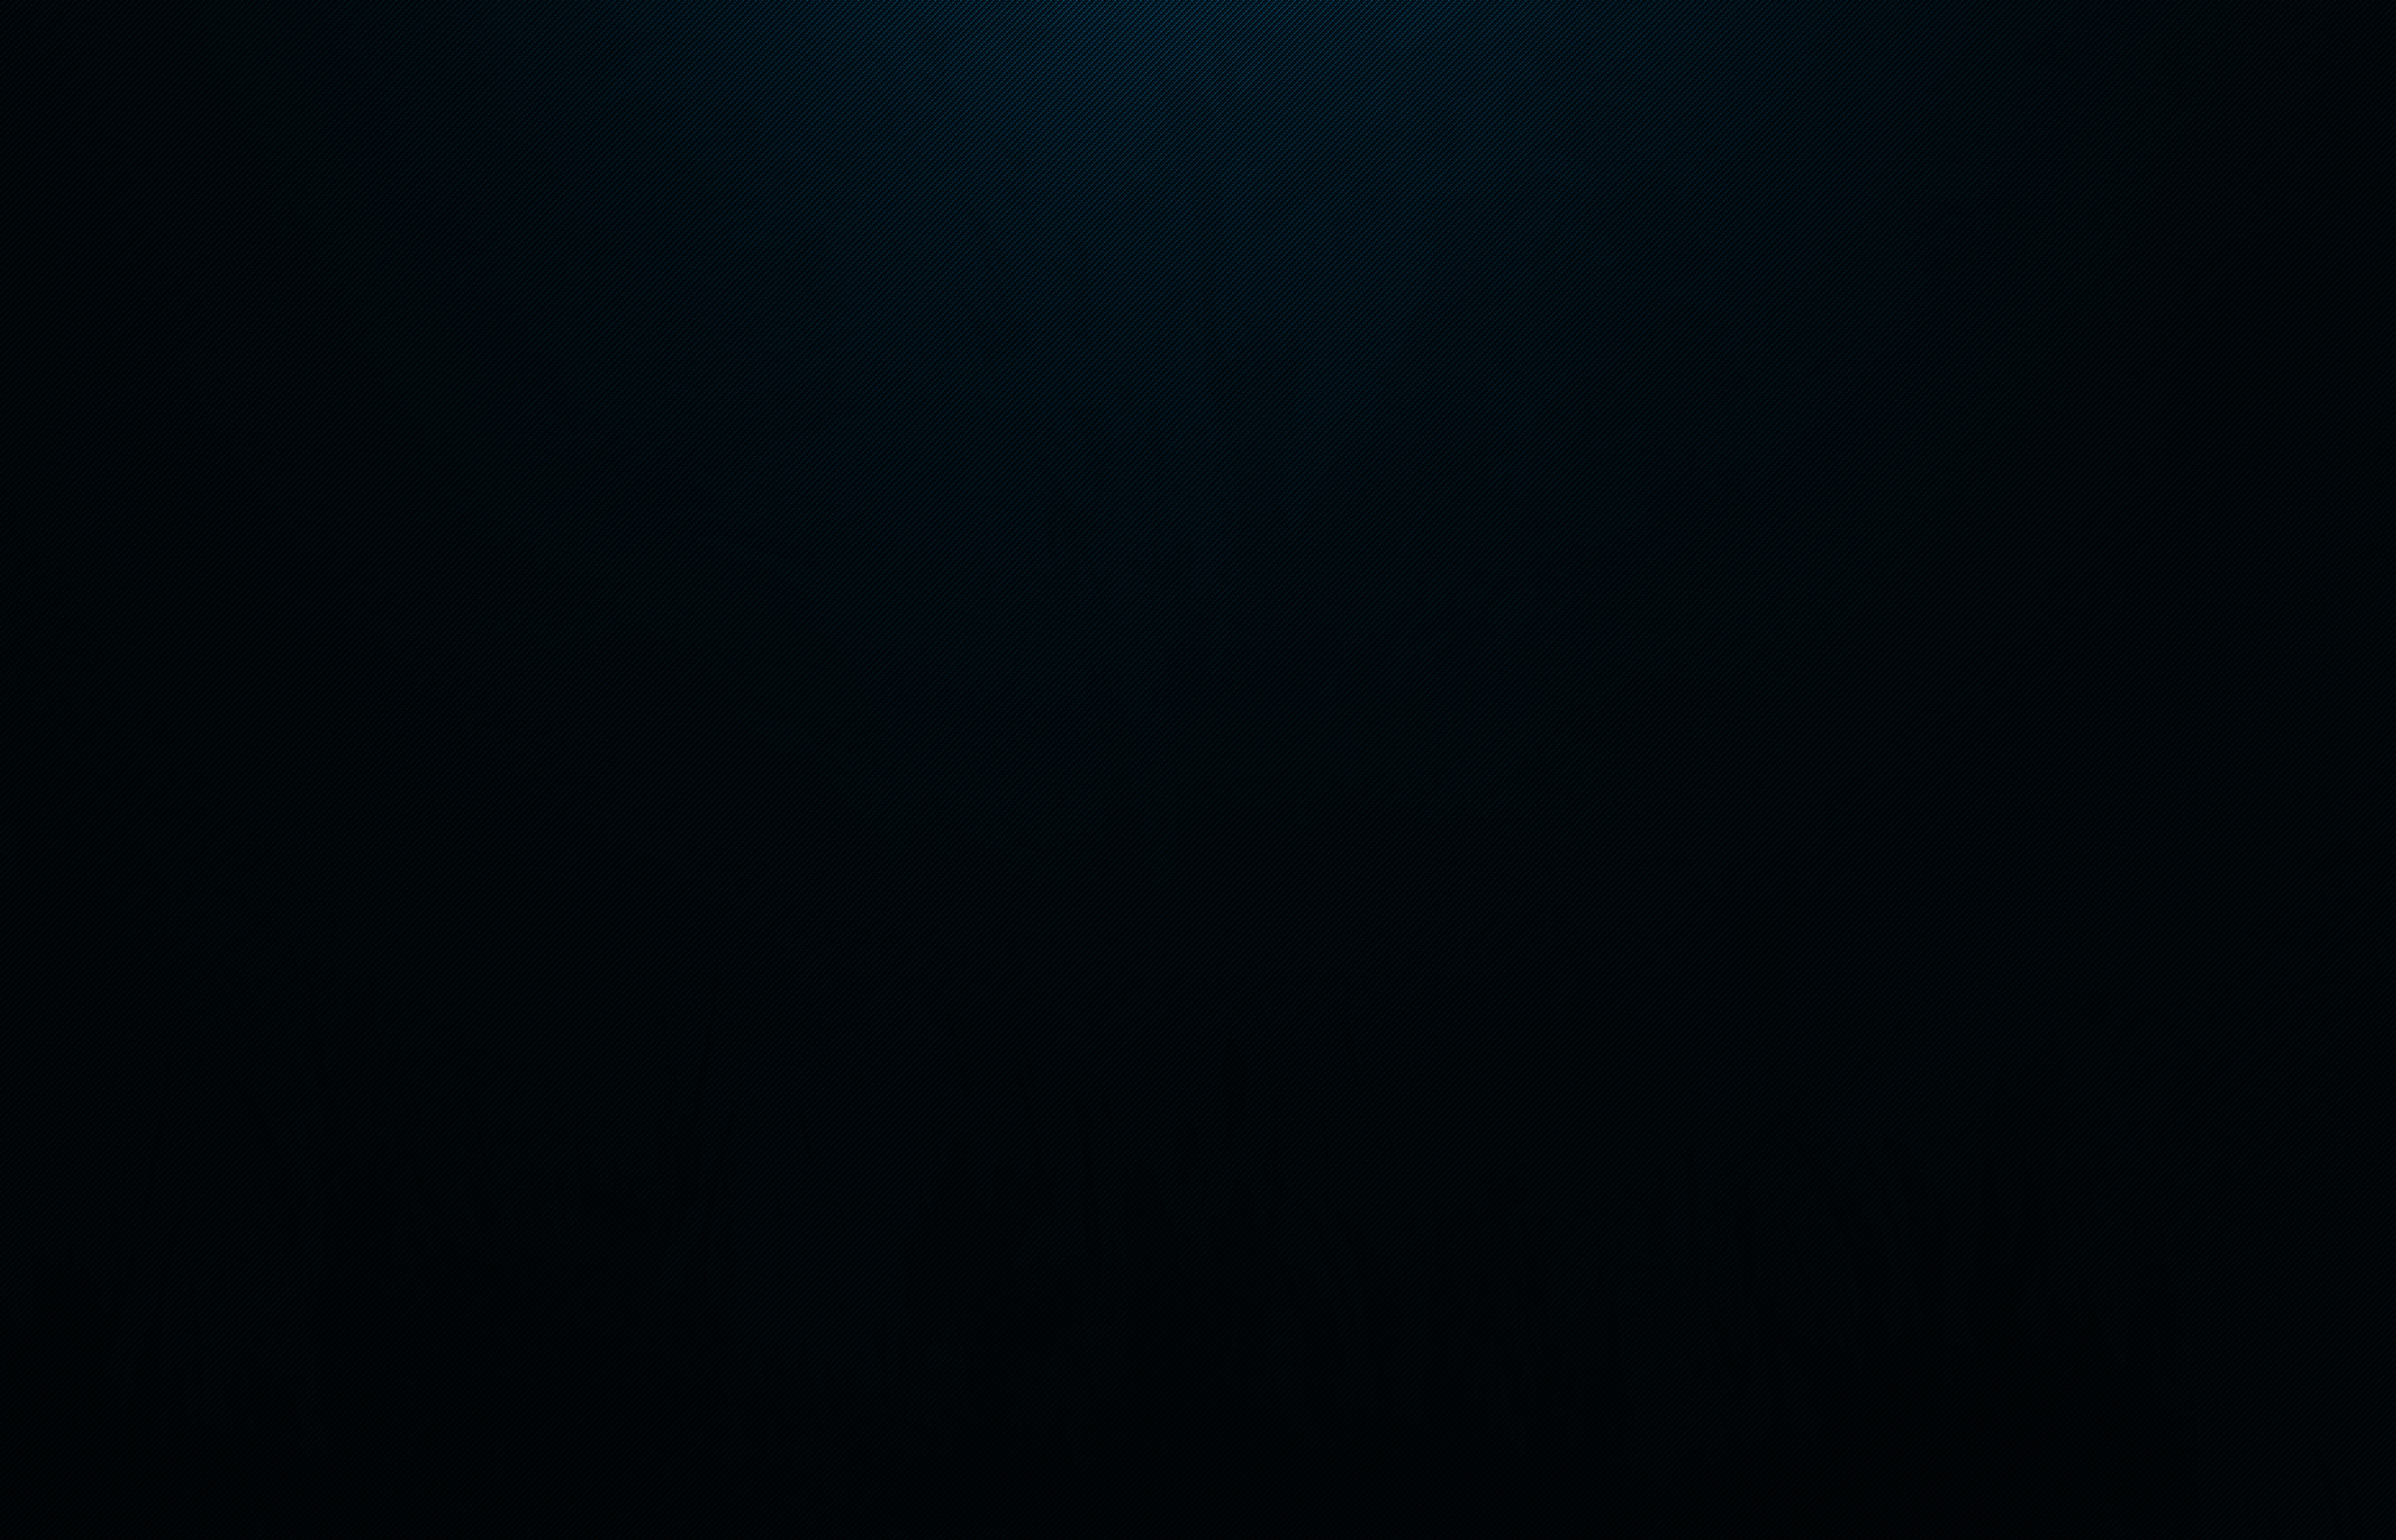 Free download Solid Navy Blue Background Solid dark blu [2800x1800] for  your Desktop, Mobile & Tablet | Explore 73+ Navy Blue Wallpapers | Navy  Blue Background, Navy Blue Backgrounds, Navy Blue Patterned Wallpaper